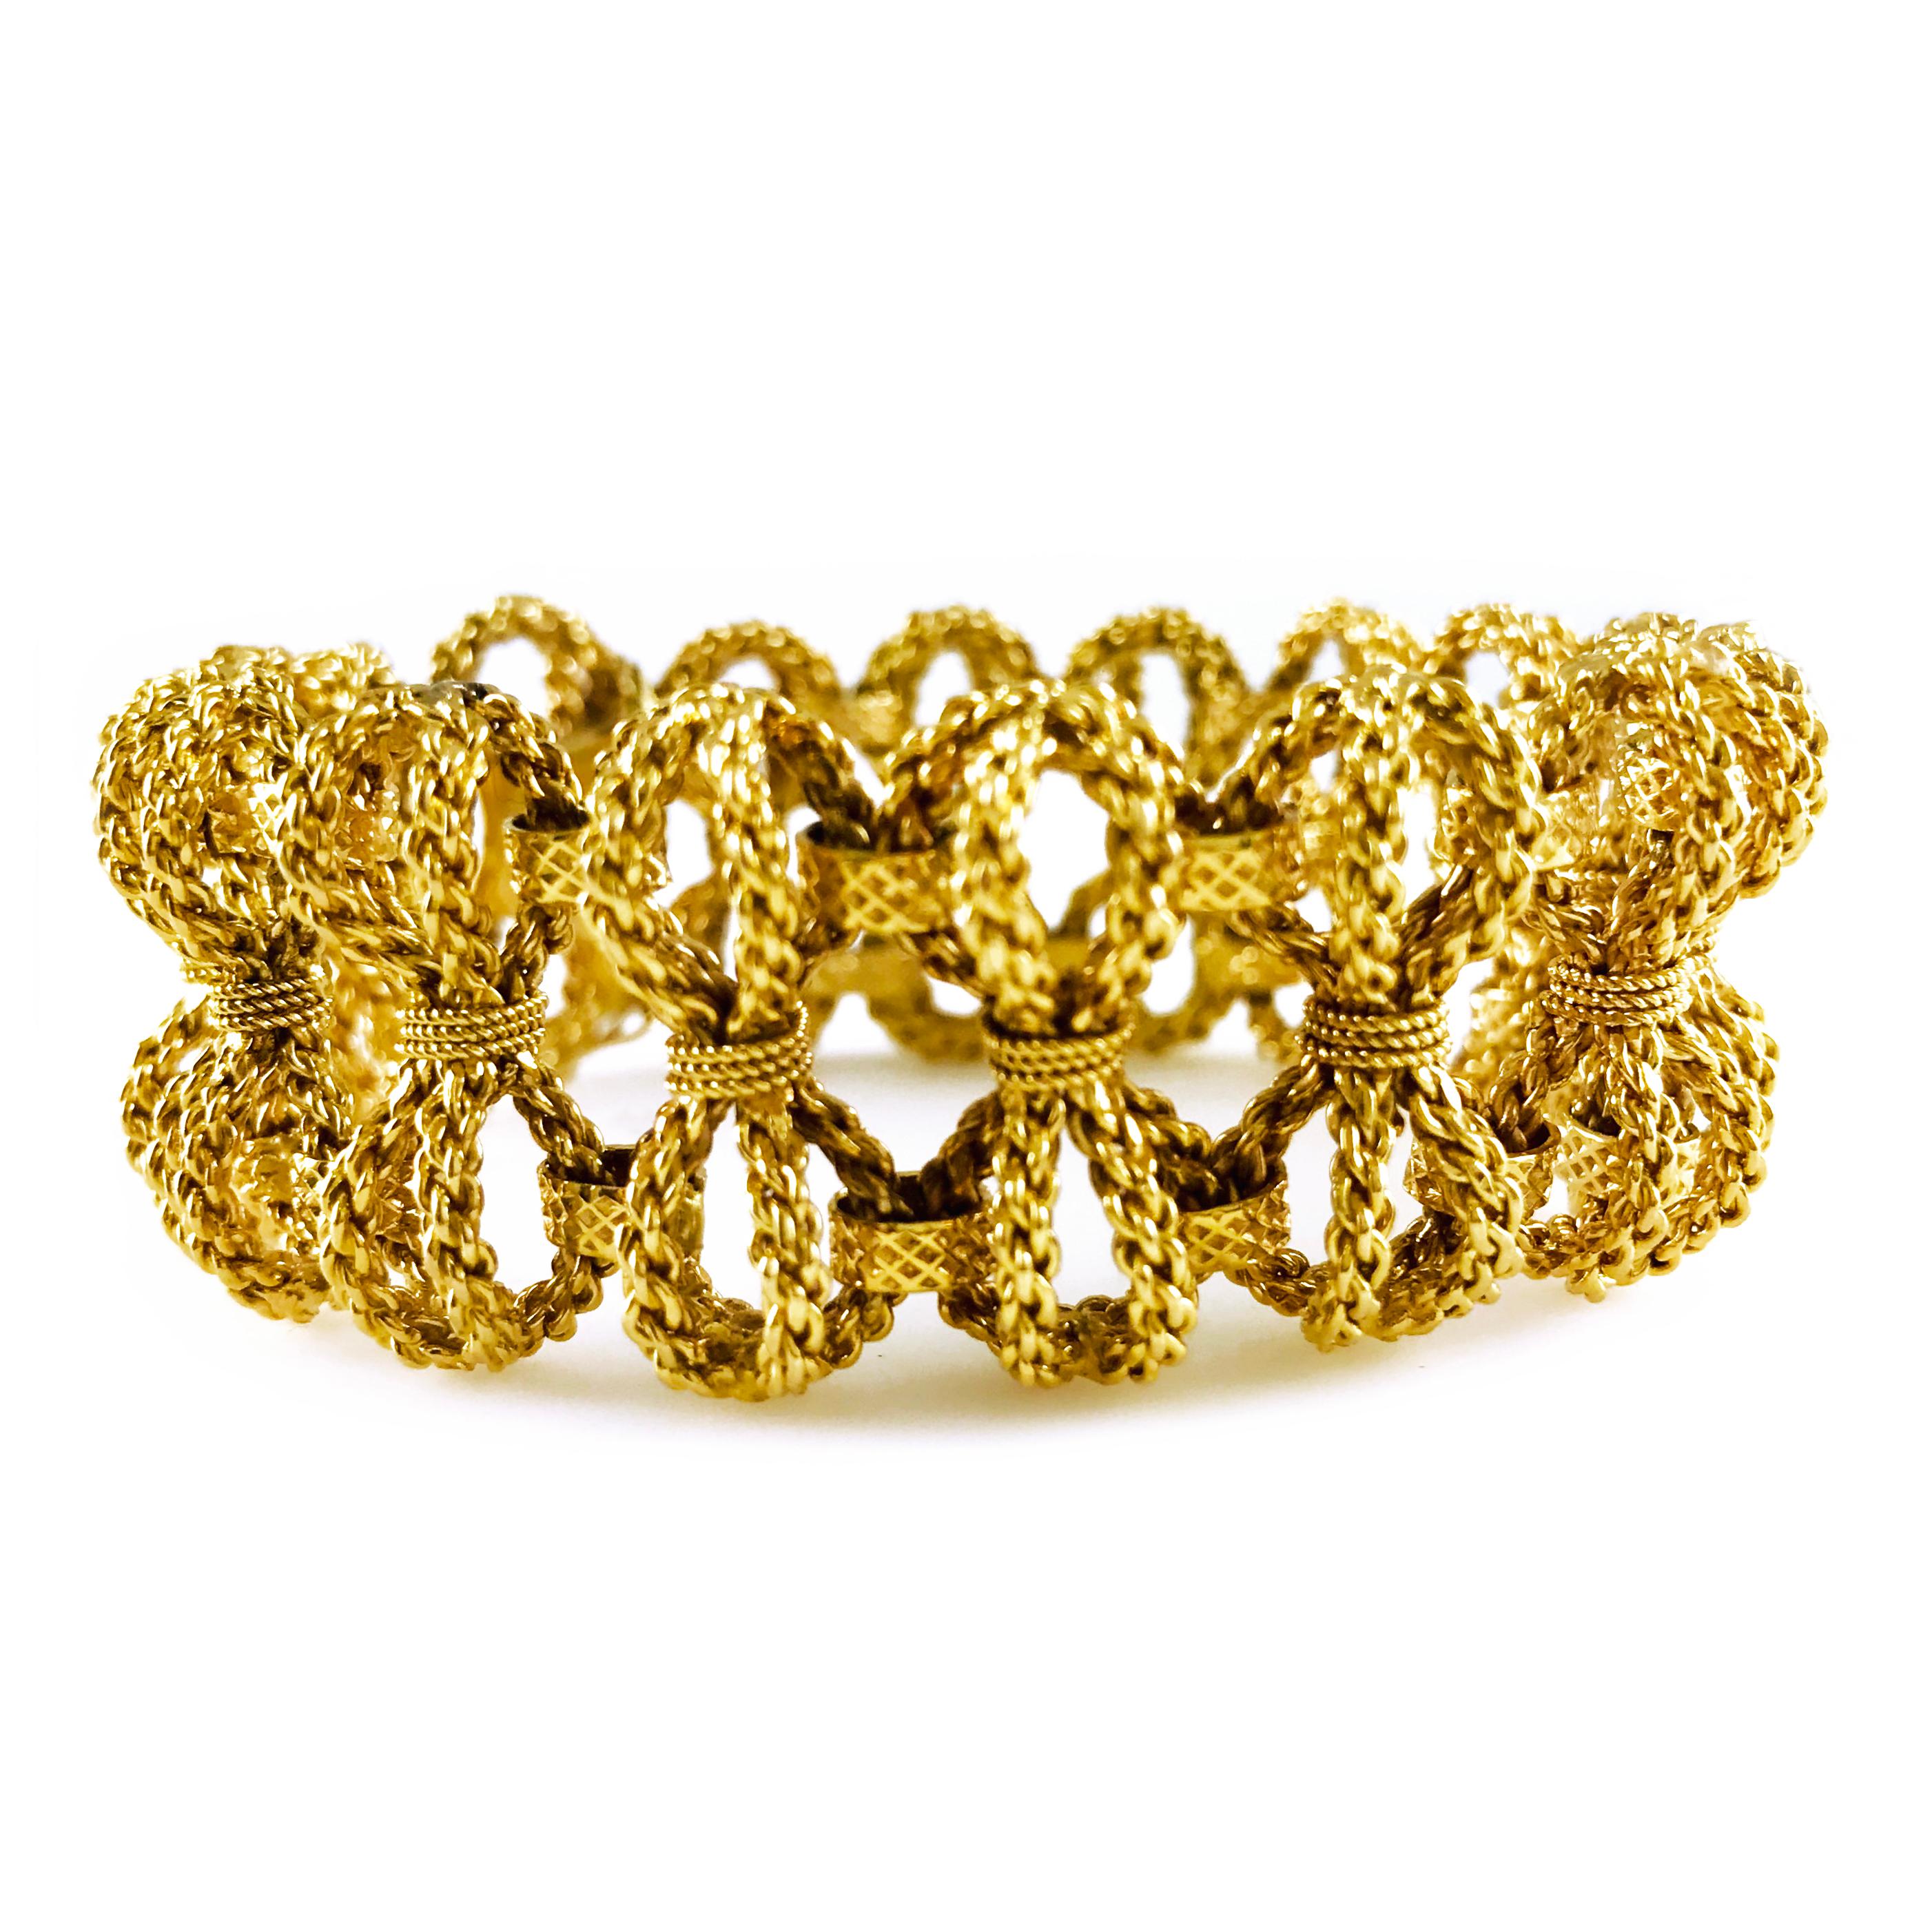 18K Gold Seil-Stil Bogen-Armband. Süße, romantische Schleifen sind entlang dieses wunderschönen Armbands geformt. Hübsch und doch frech, ein einzigartiger Leckerbissen, der leger oder zu einem eleganten Anlass getragen werden kann. Das Armband ist 7